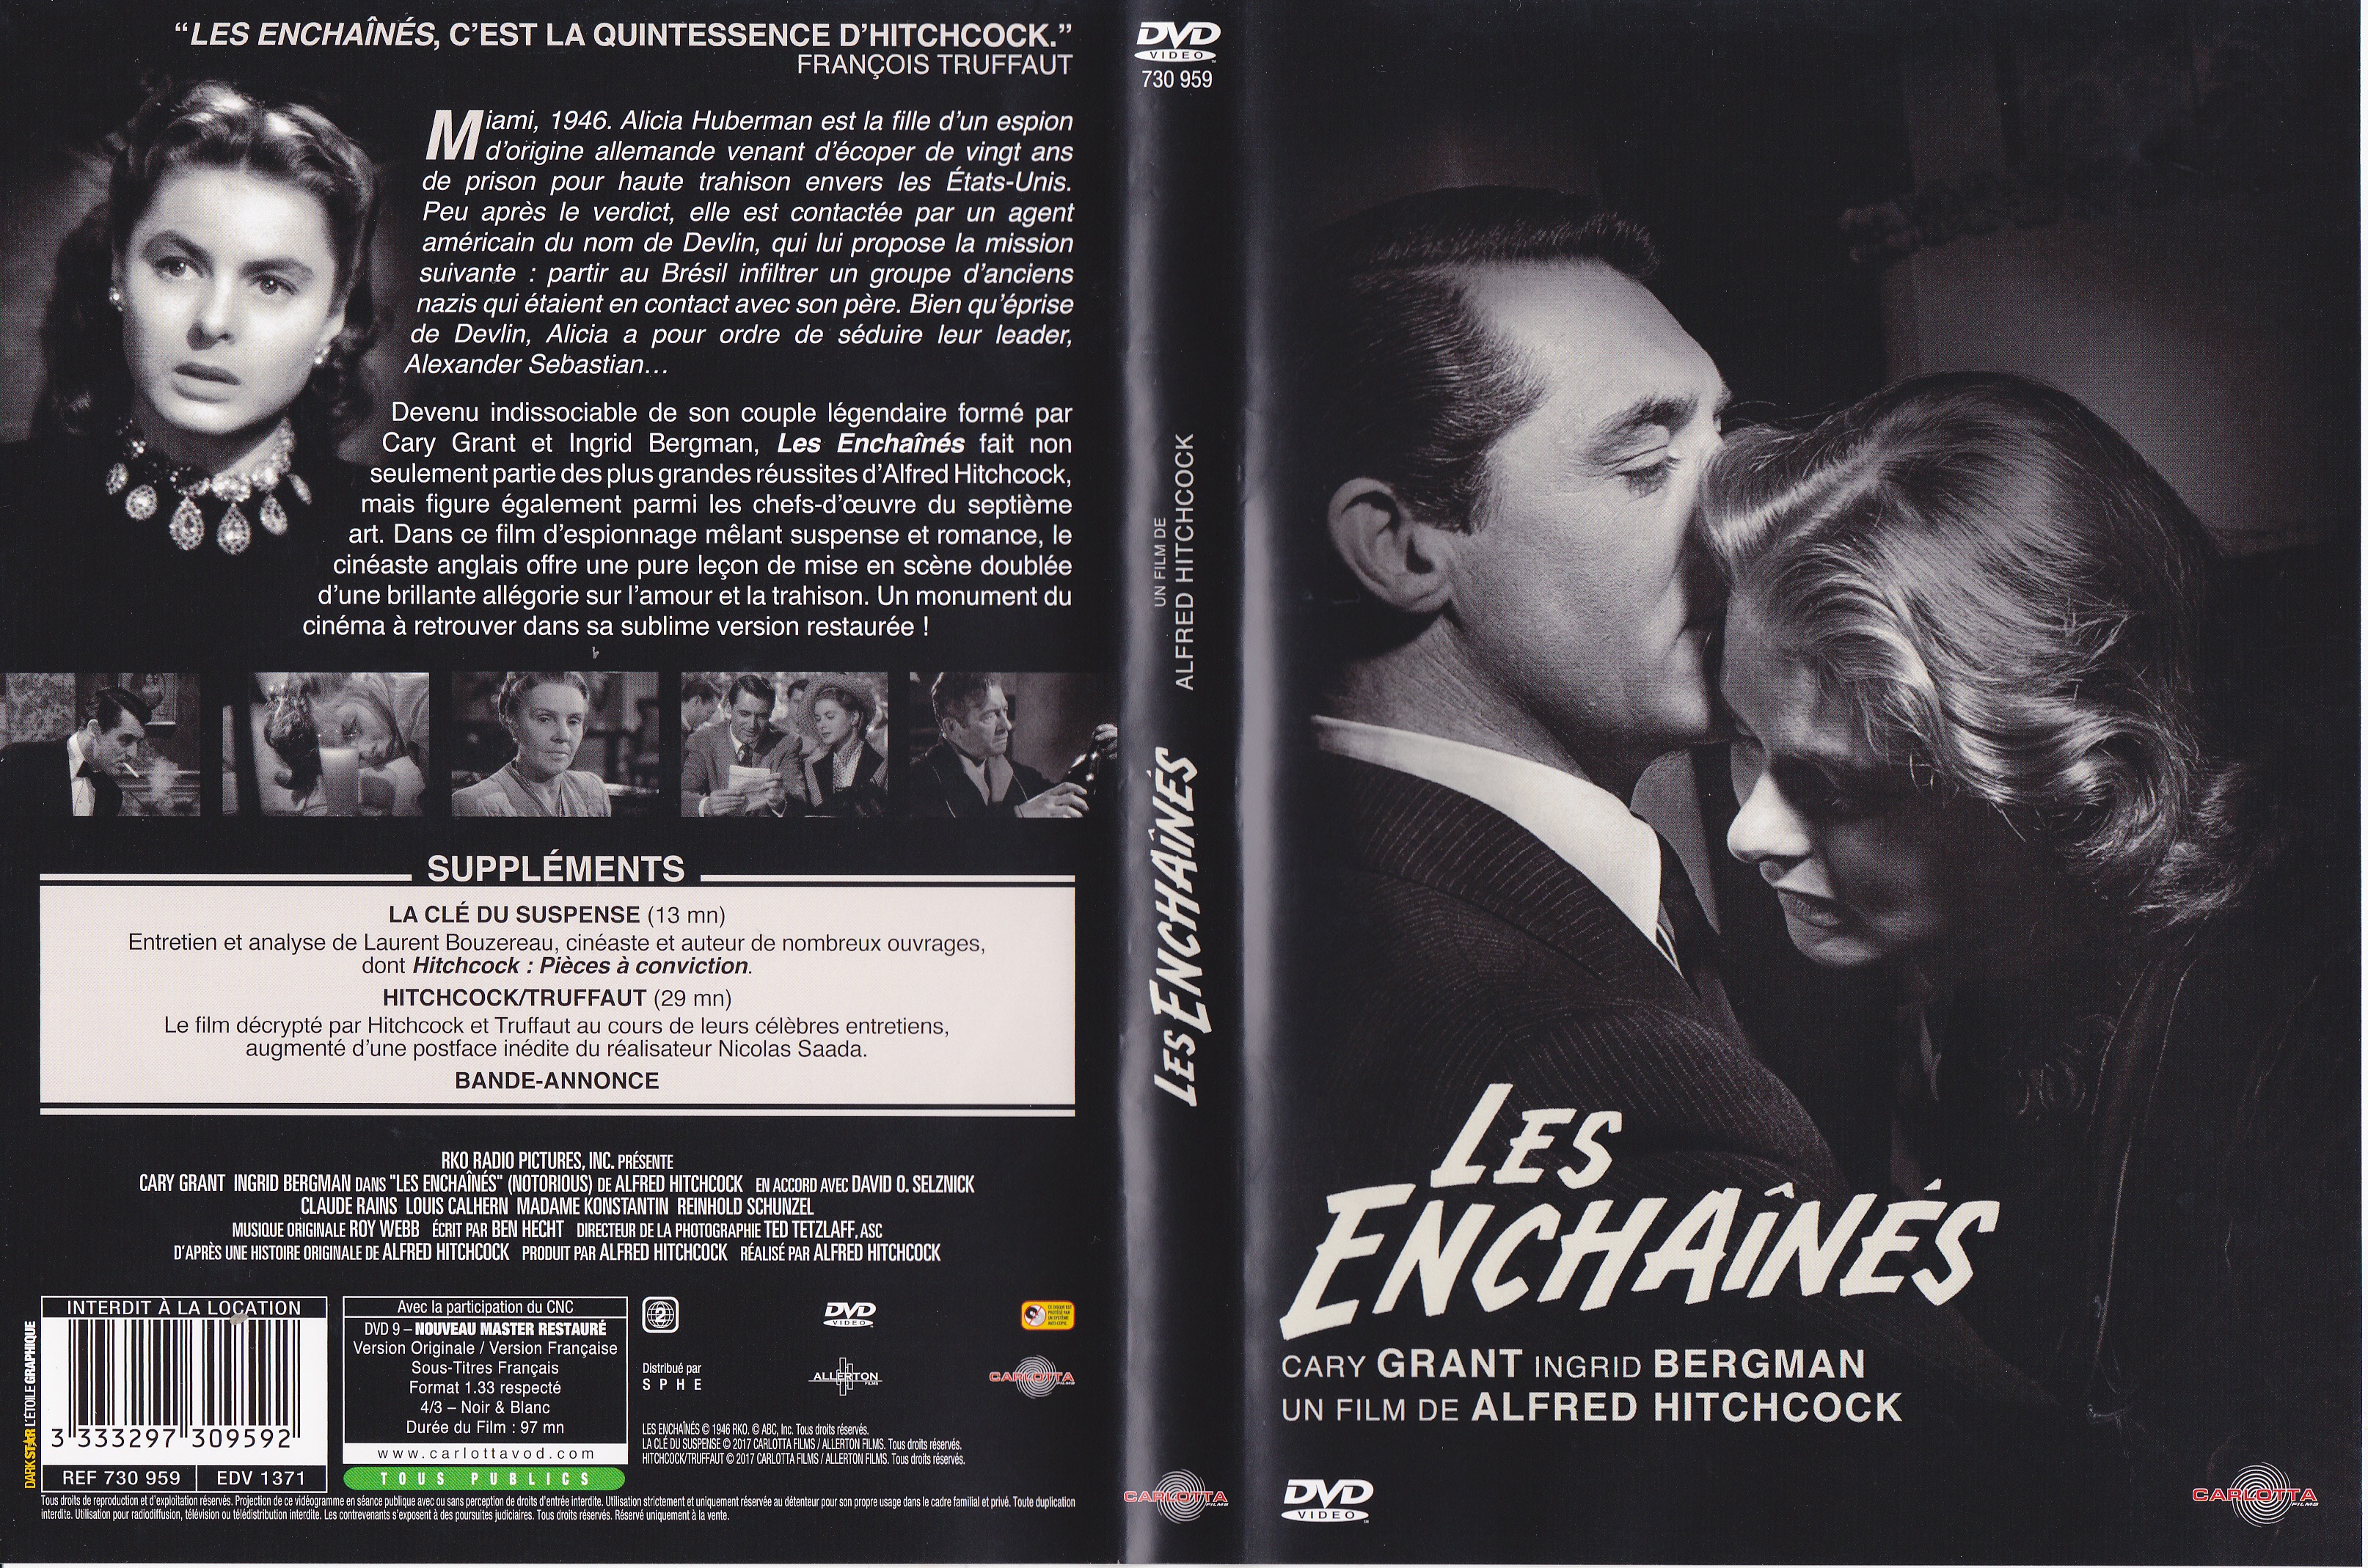 Jaquette DVD Les enchains v4